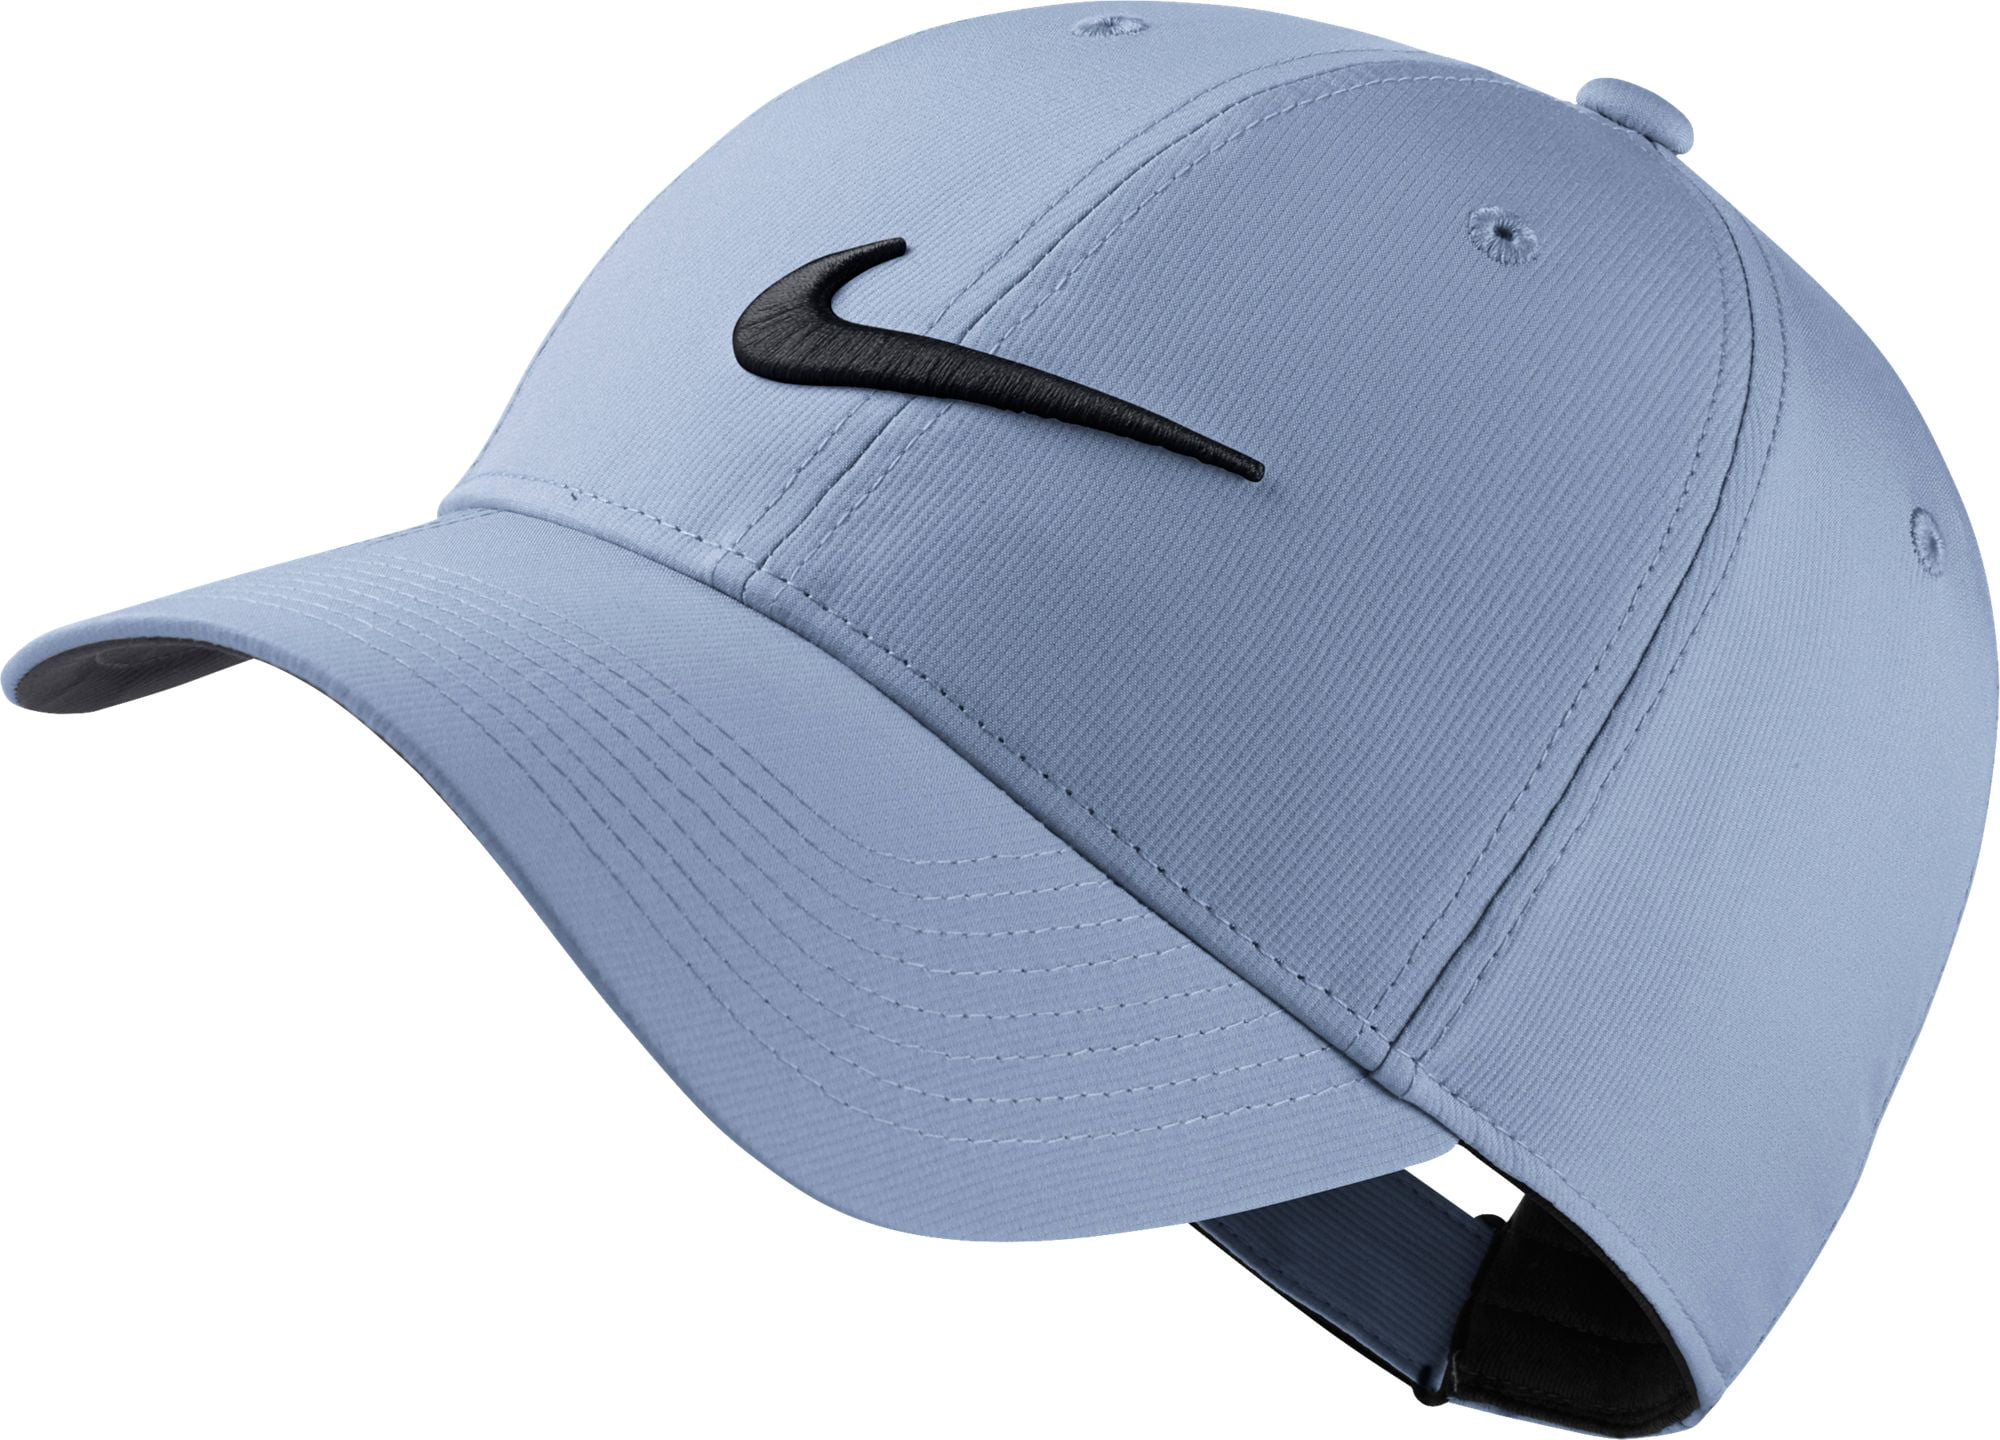 nike men's legacy91 tech golf hat